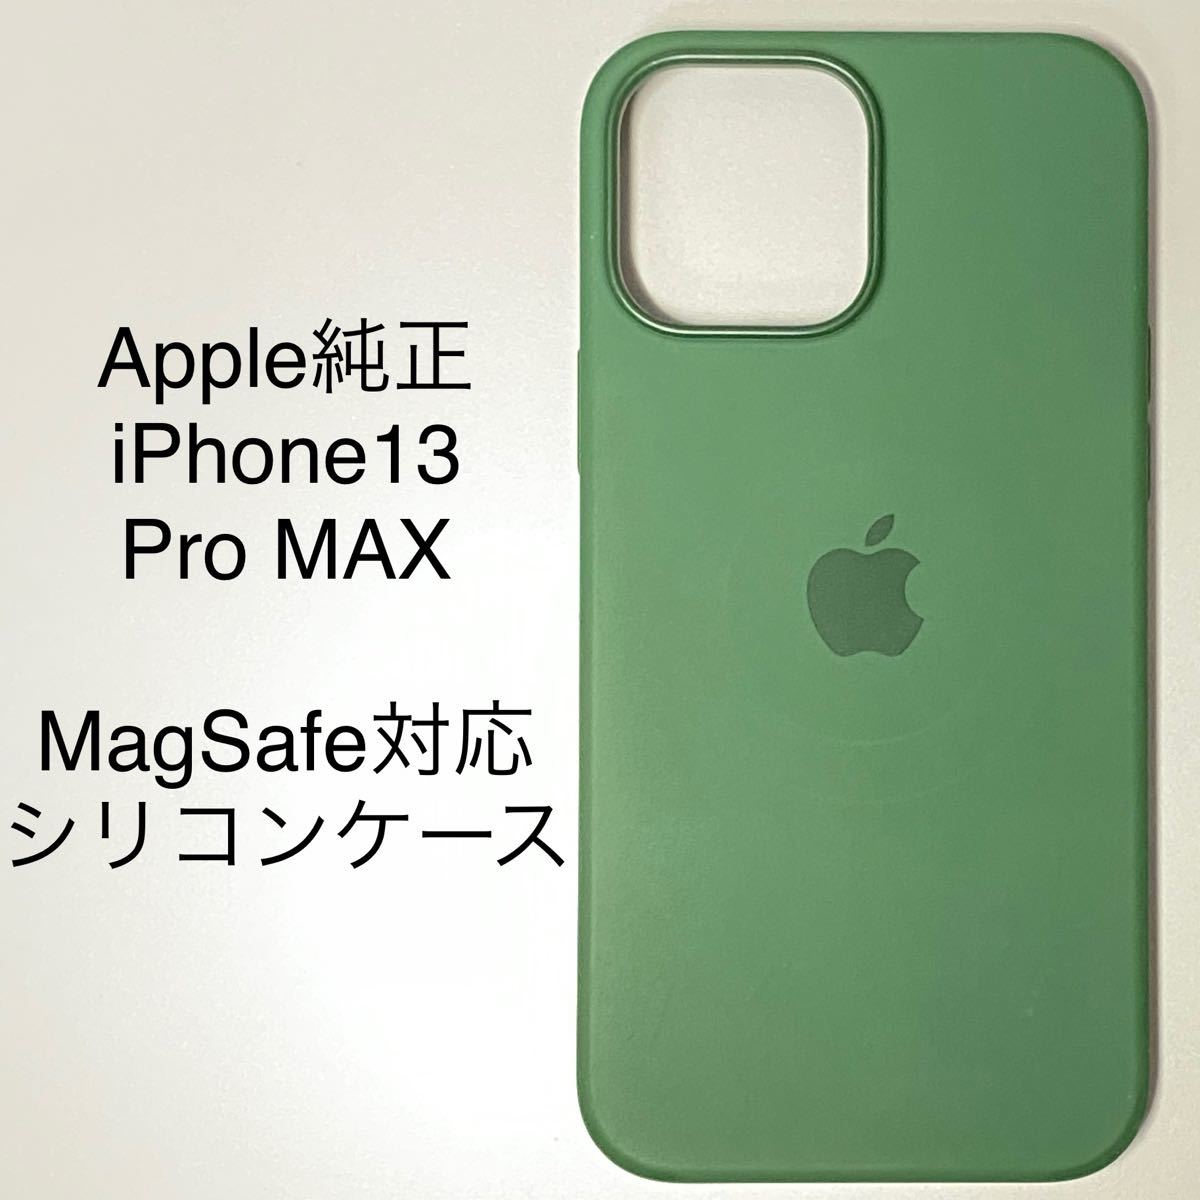 Apple純正 iPhone 13 Pro Max MagSafe対応 シリコーンケース 緑